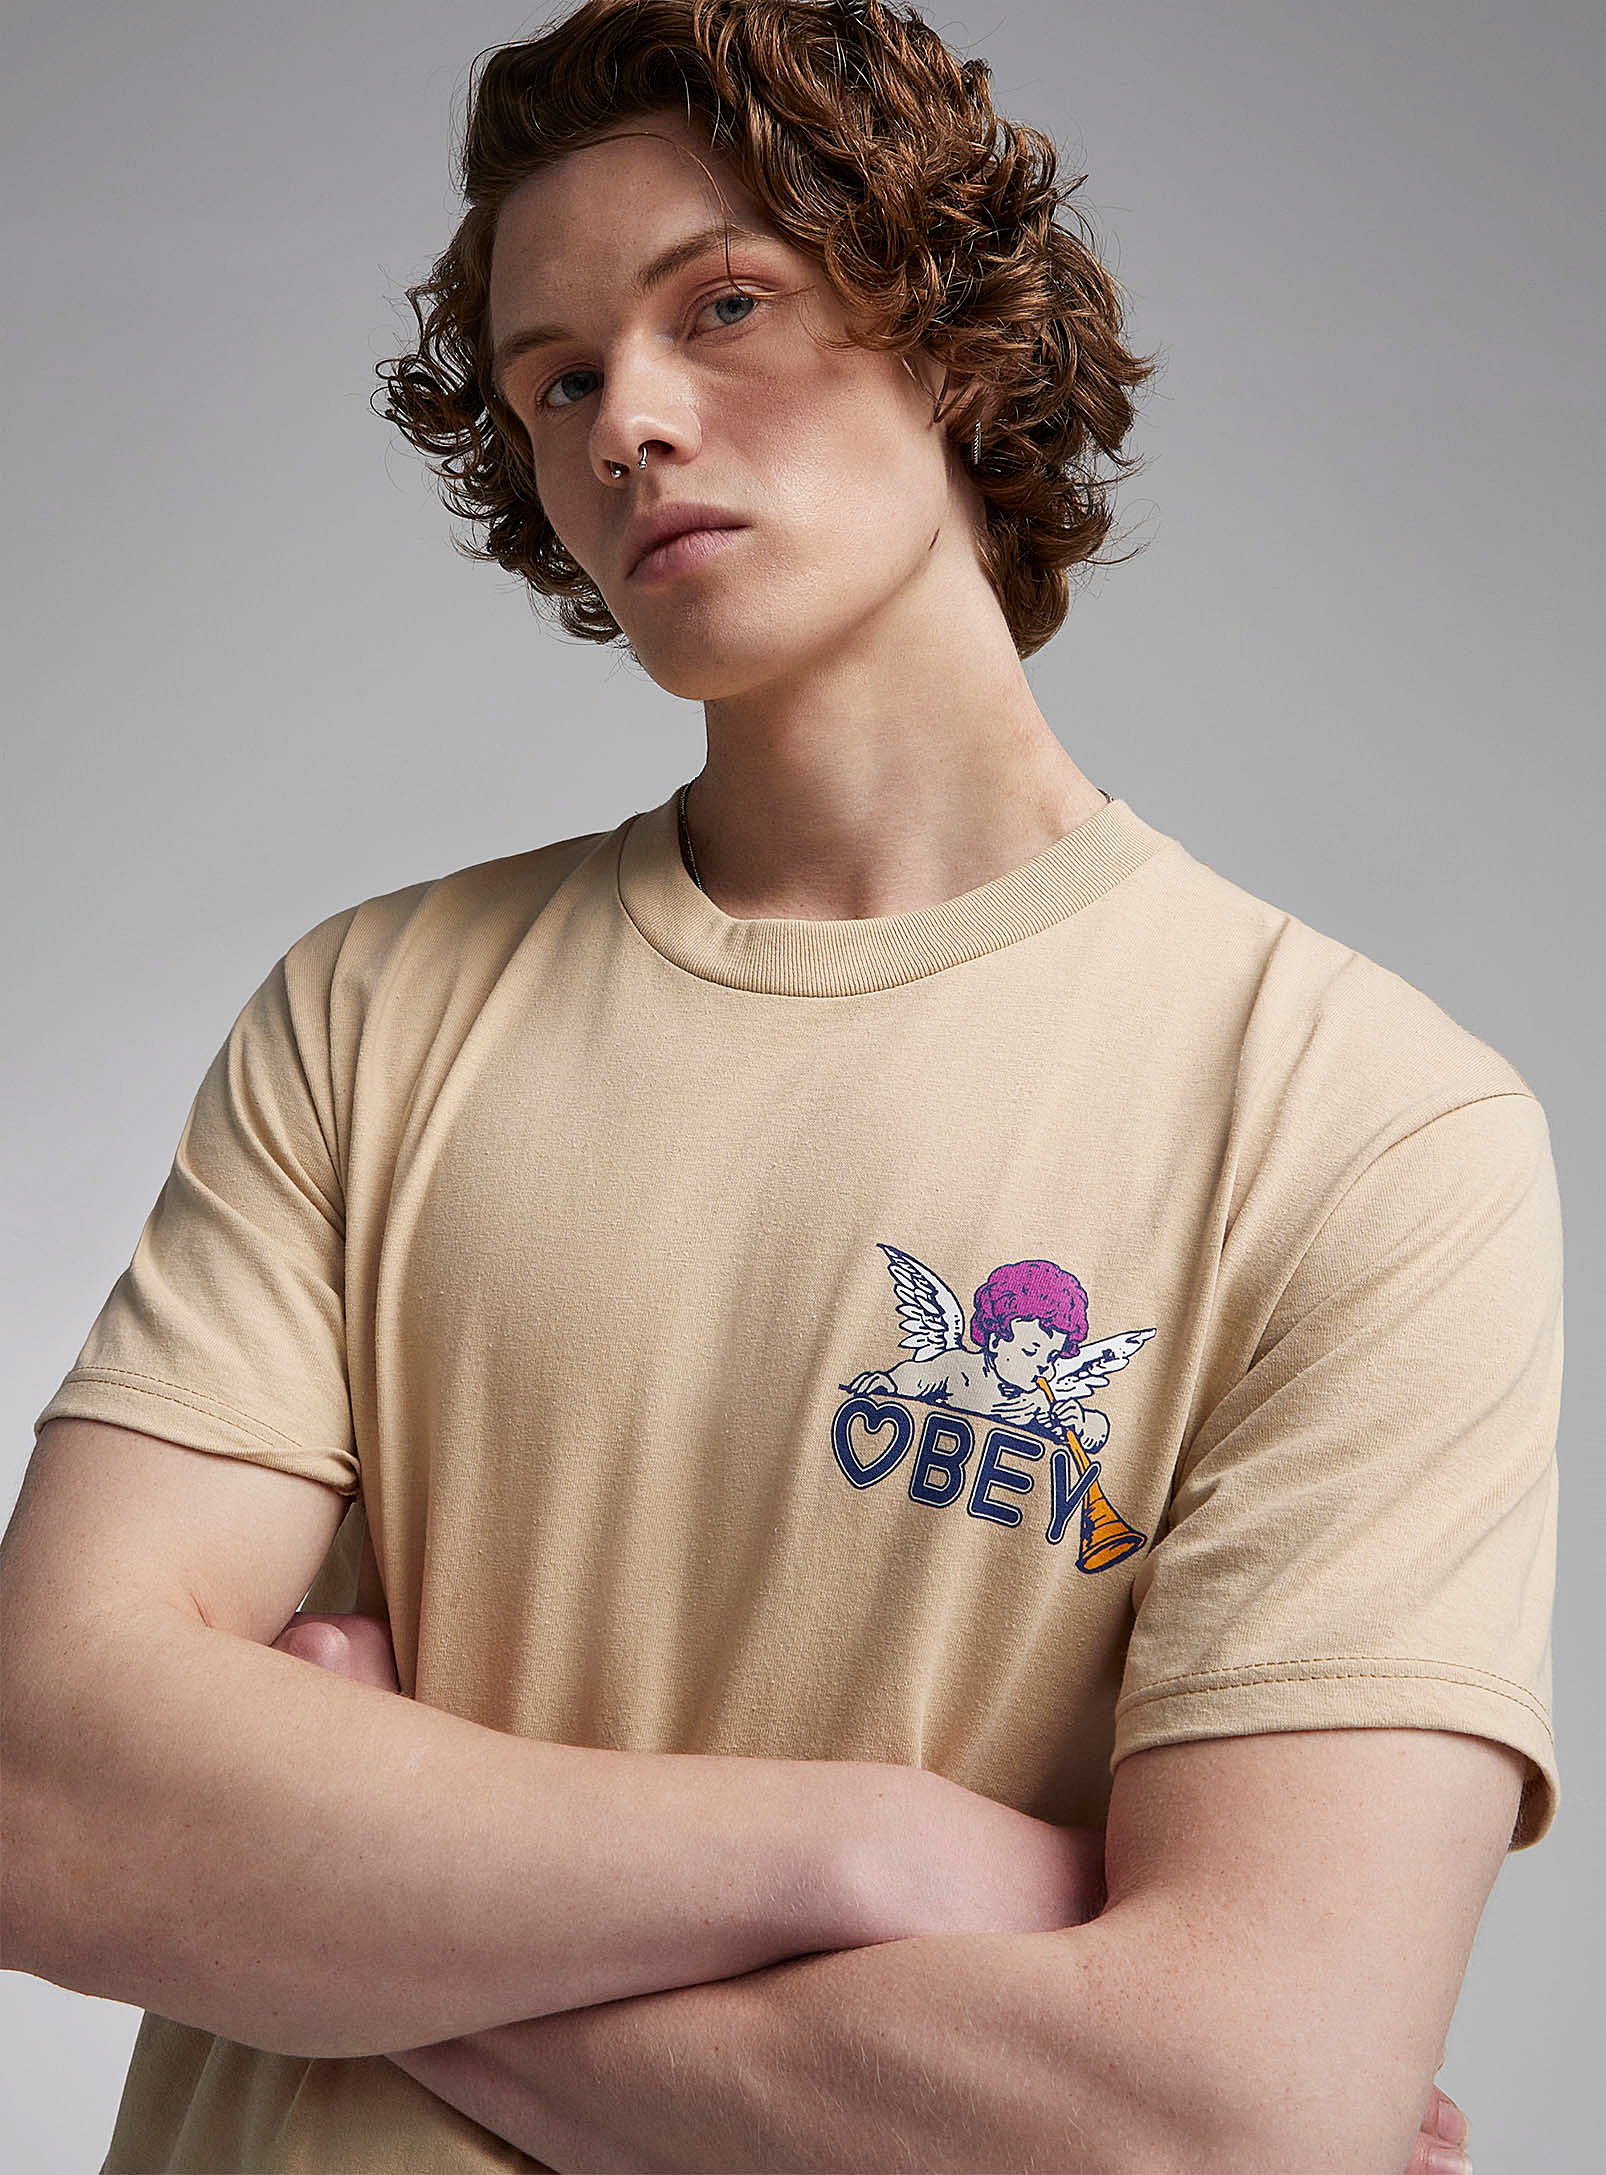 Obey - Le t-shirt chérubins